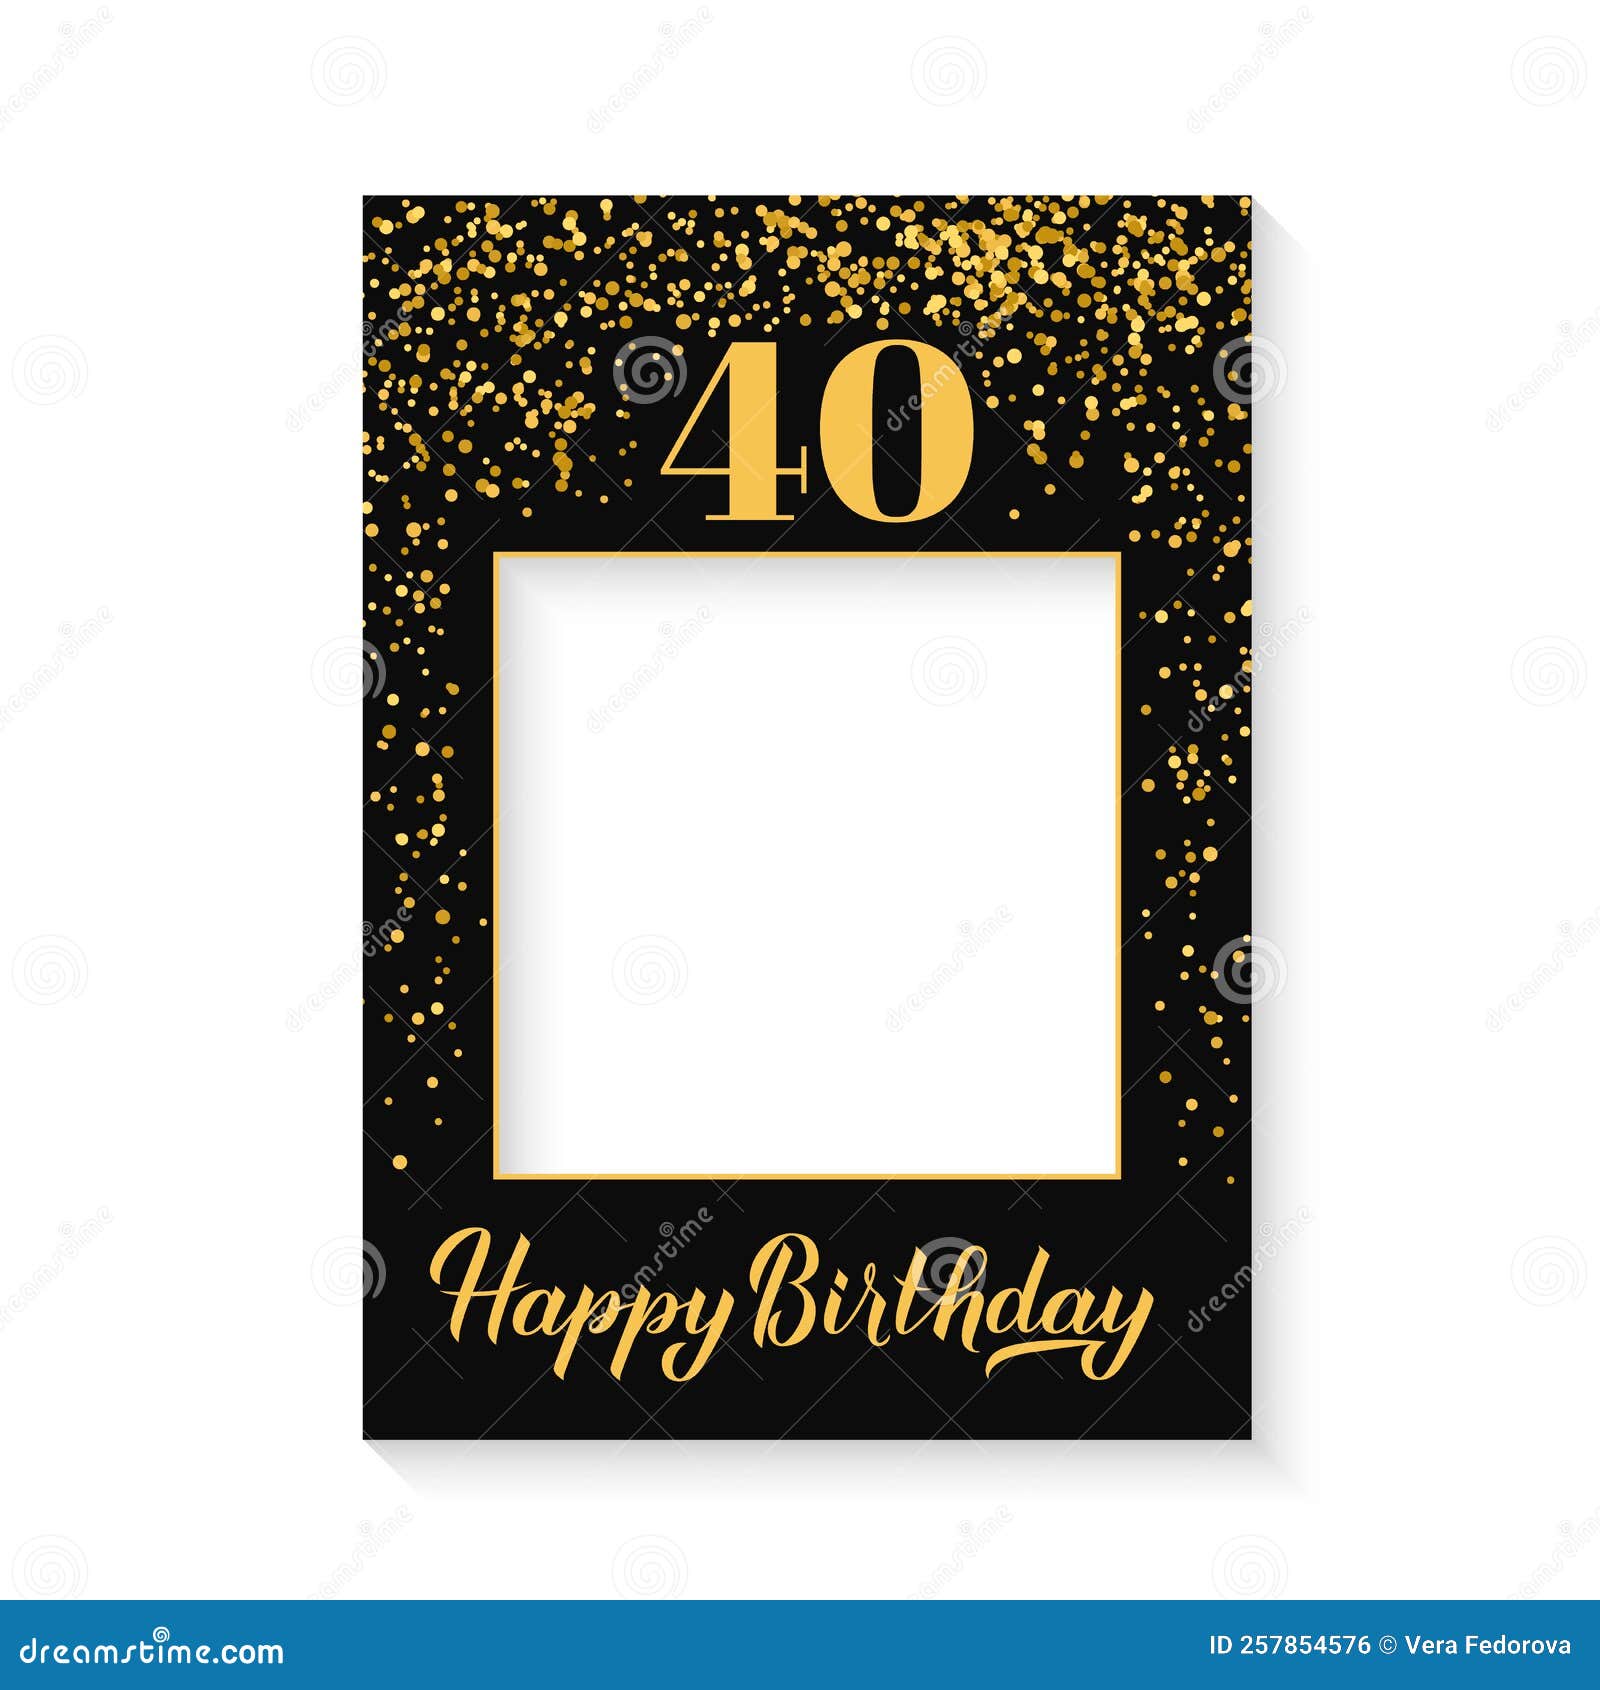 Các thông tin về sinh nhật lần thứ 40 của bạn đã sẵn sàng cho ngày kỷ niệm của bạn. Hãy sắp xếp lại kỷ niệm của bạn với một khung ảnh điện thoại được thiết kế đặc biệt trên nền trắng. Hãy xem ảnh để biết thêm chi tiết và bắt đầu lên kế hoạch cho ngày sinh nhật của mình!